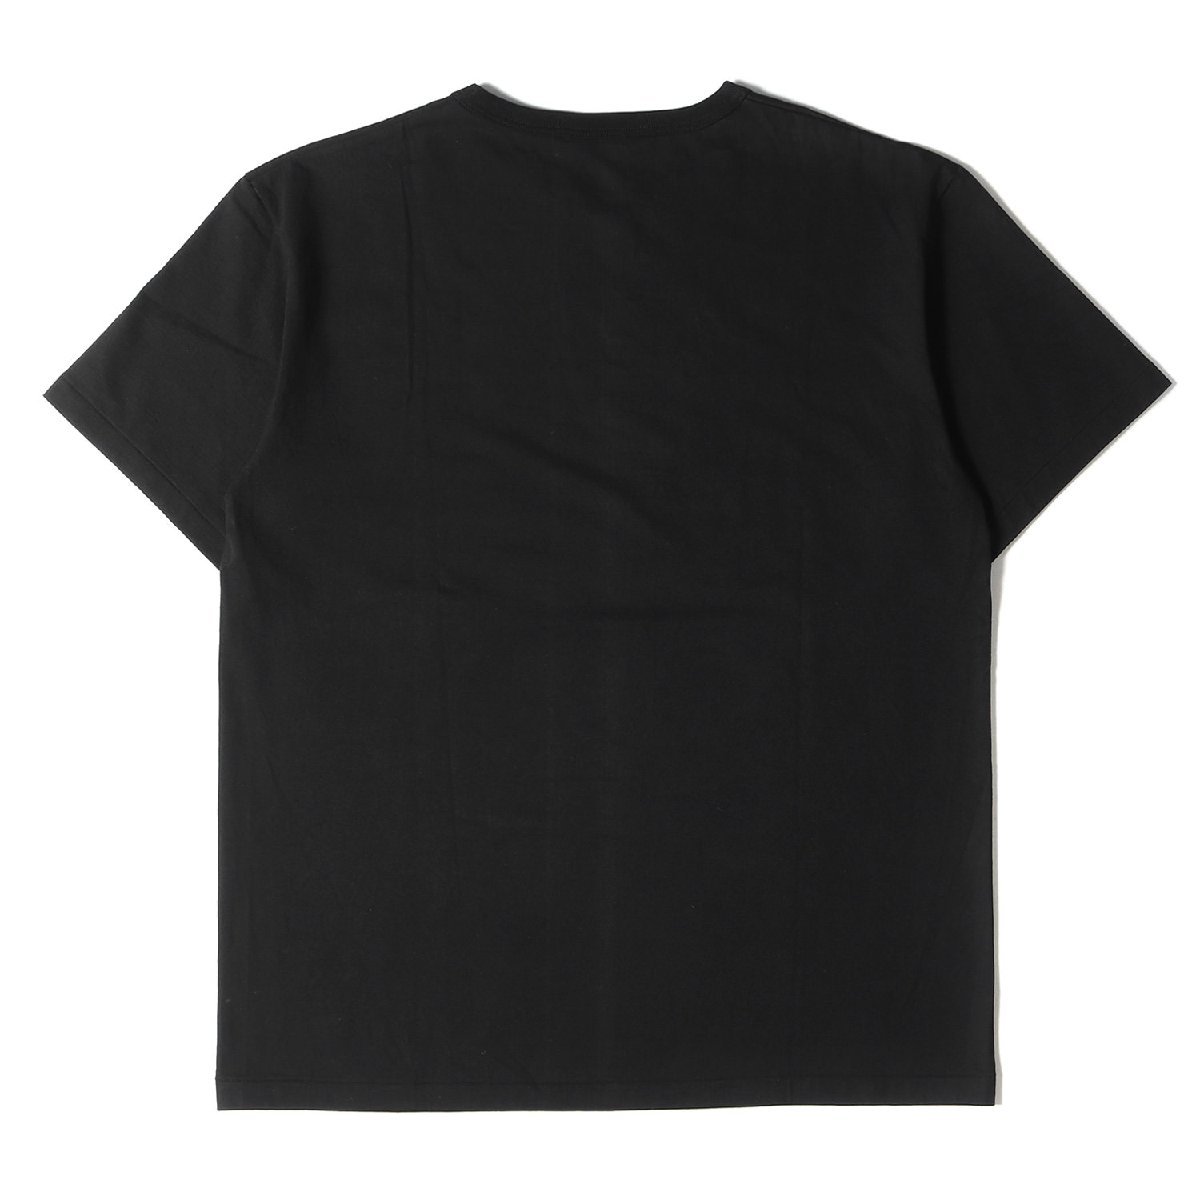 美品 COOTIE クーティー Tシャツ Robert Crumb イラスト グラフィック クルーネックTシャツ Print S/S Tee UNKNOWABLE? 19SS ブラック L_画像2